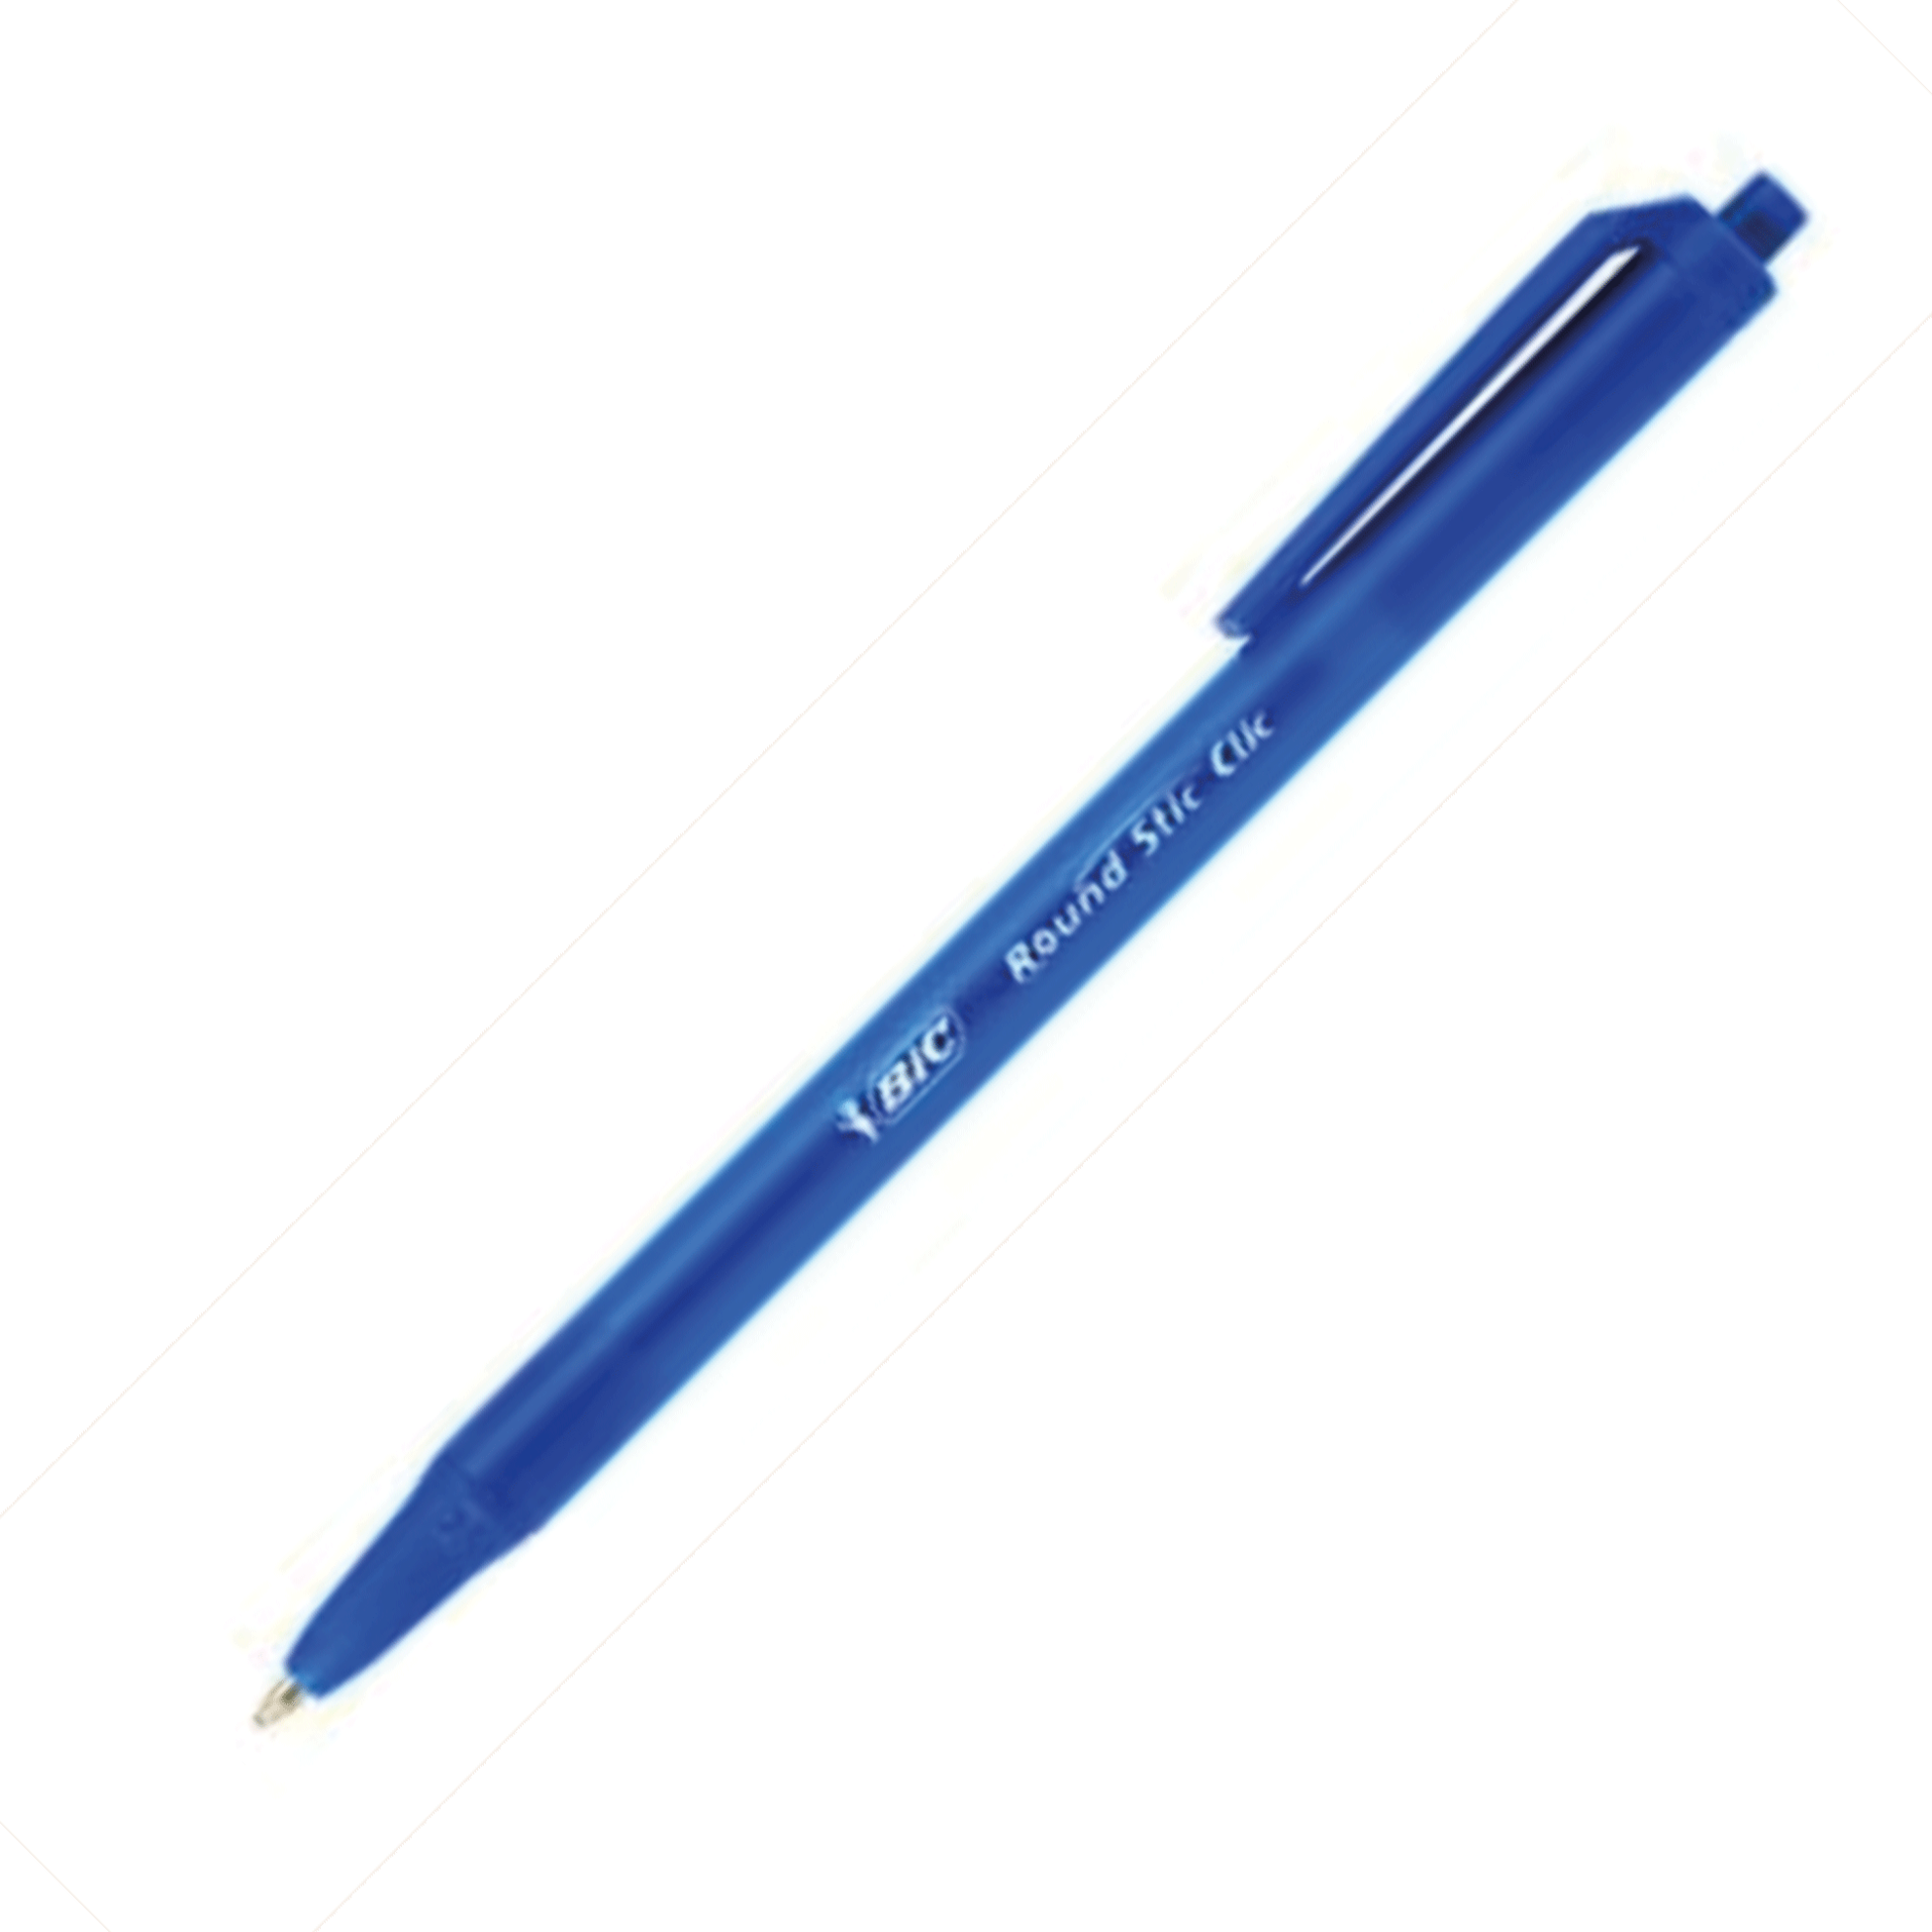 Ручка bic round. Ручка шариковая BIC Round Stic. Ручка шариковая BIC "Round Stic" синяя, 1,0мм. BIC набор шариковых ручек Round Stic clic, 0.32 мм. Ручка BIC Round Stic m (голубой корпус).